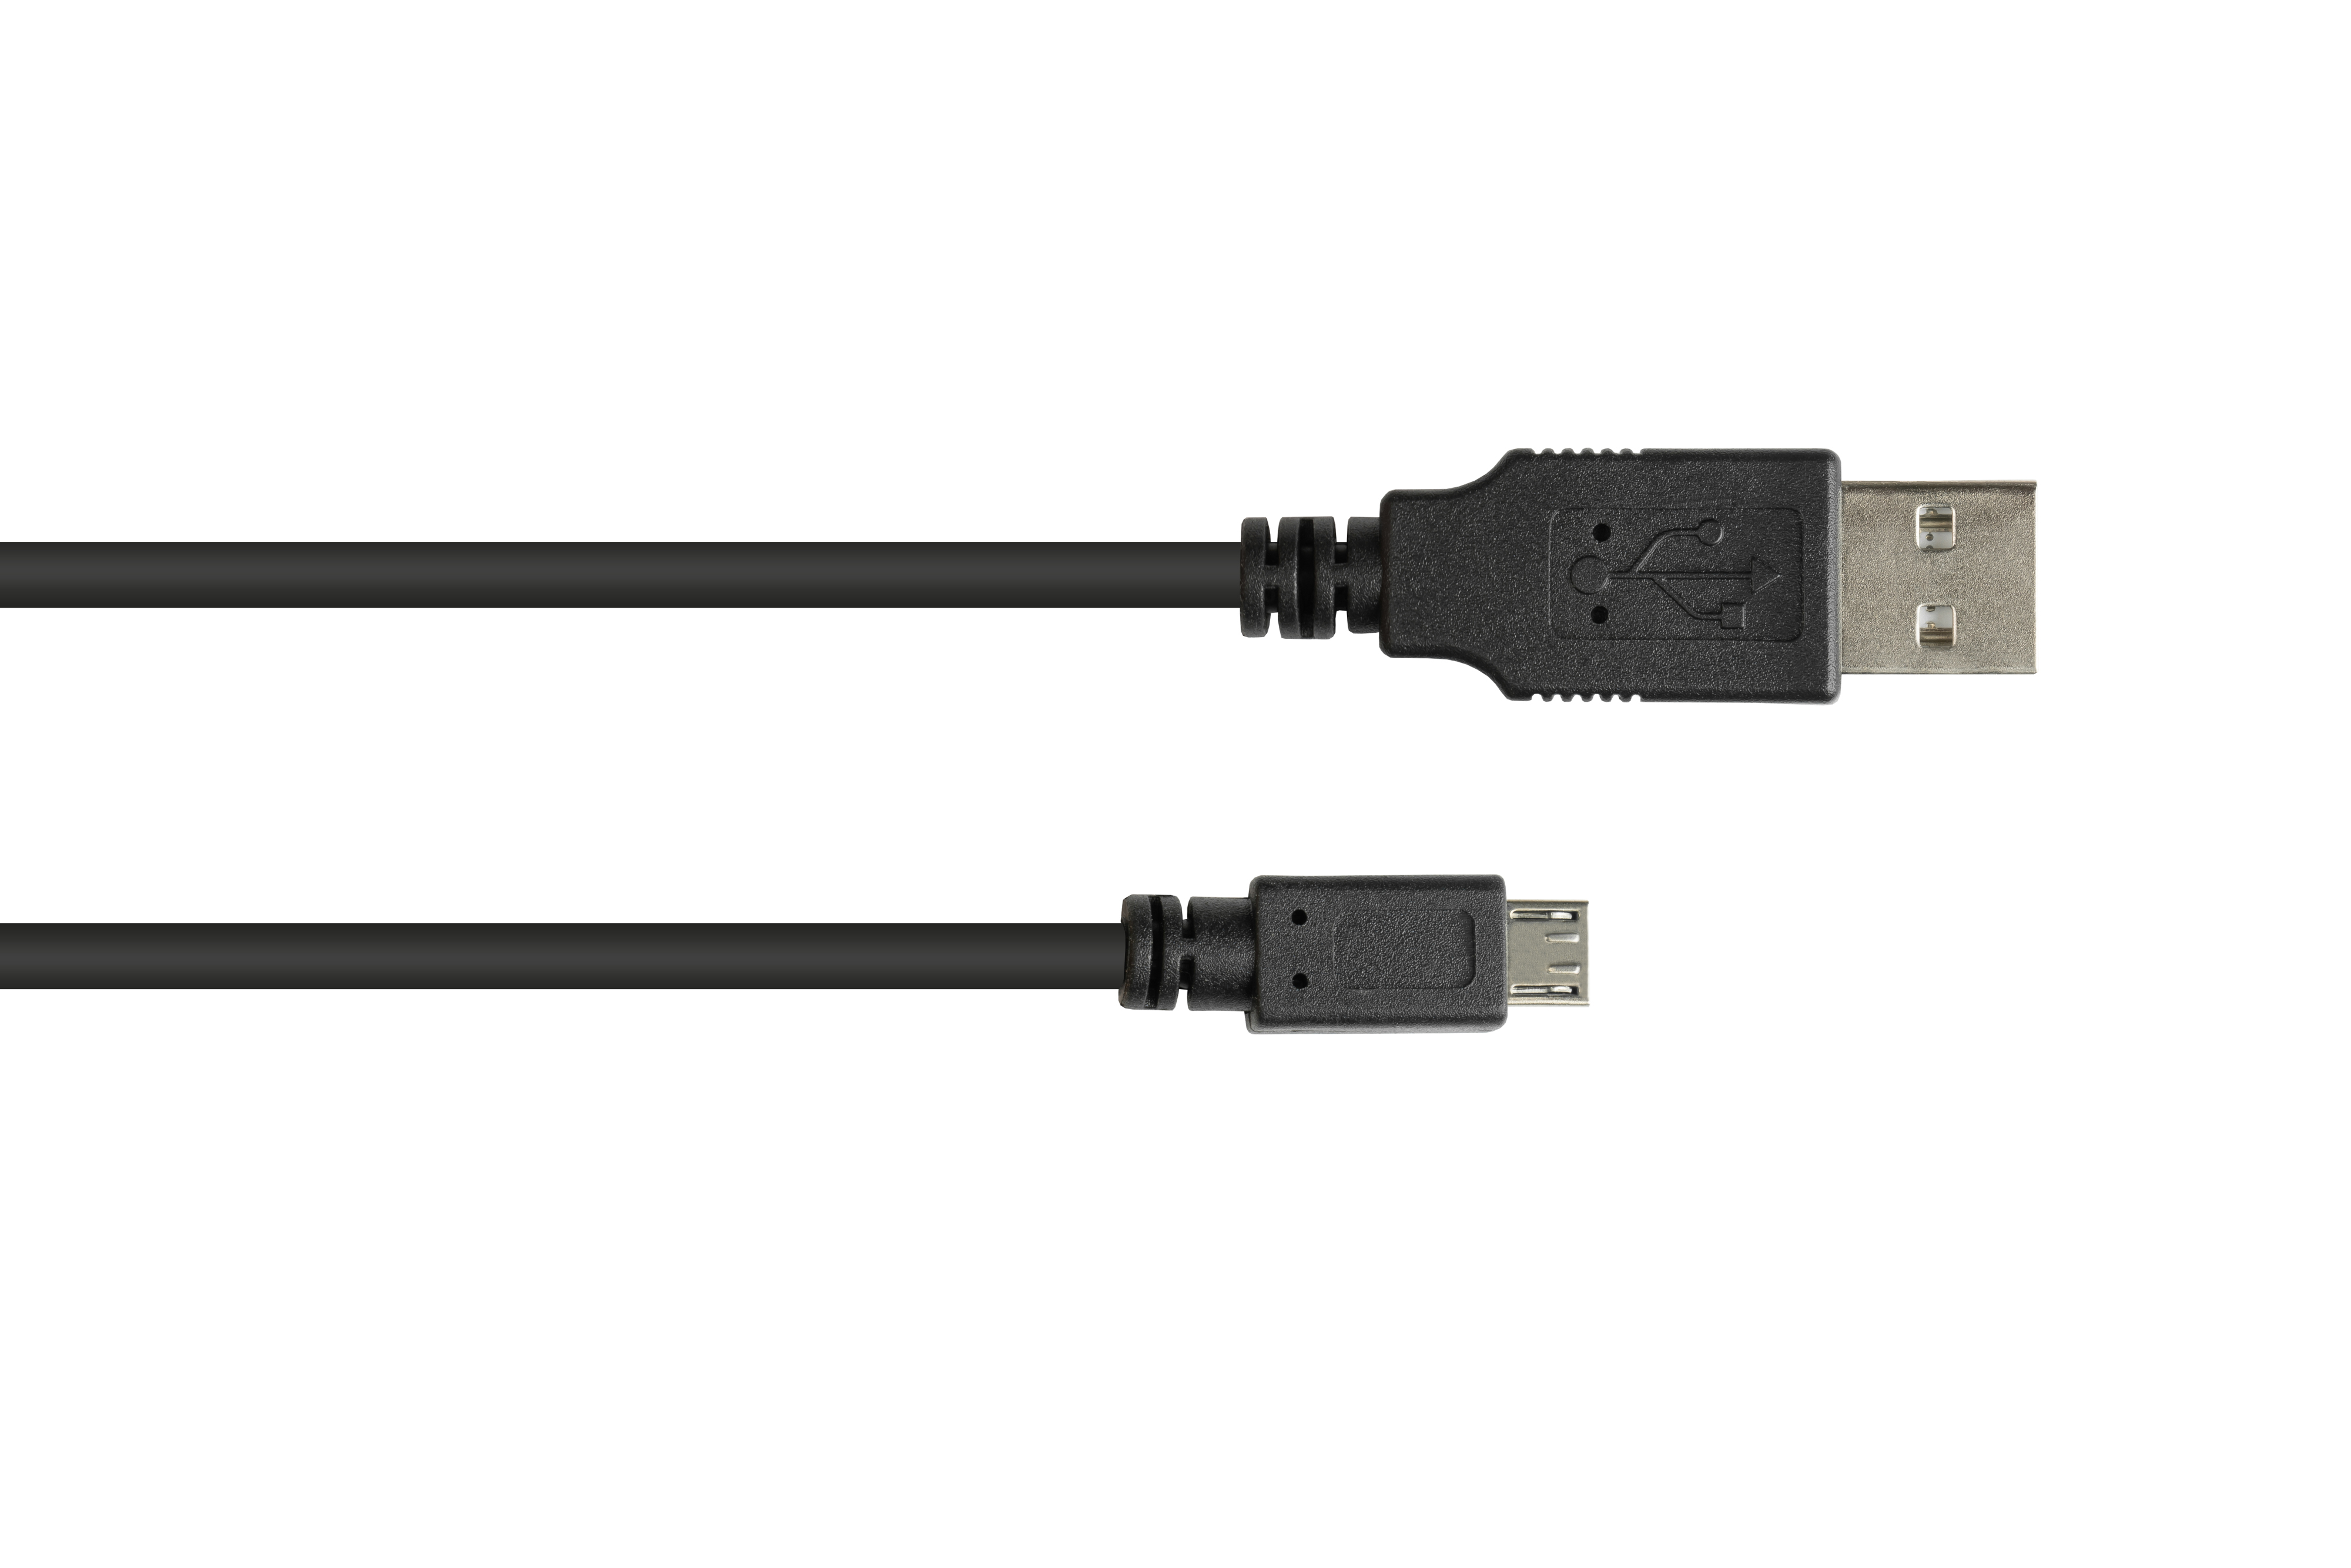 Micro B, A EASY 2.0 Stecker GOOD Stecker schwarz USB Anschlusskabel CONNECTIONS an